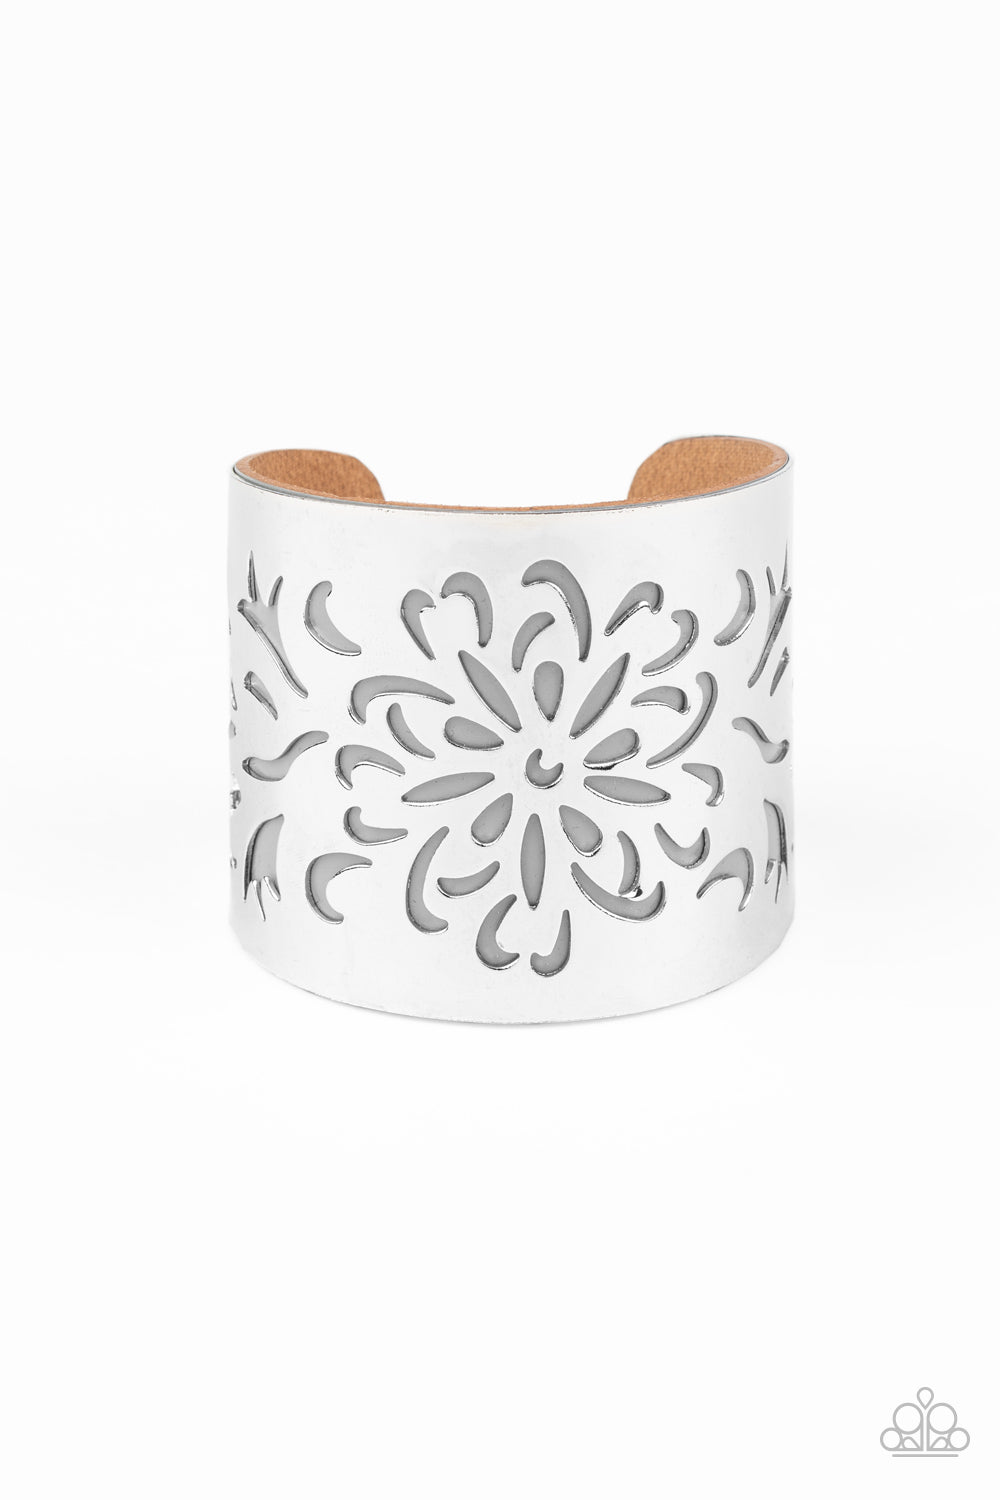 Get Your Bloom On Silver
Cuff Bracelet - Daria's Blings N Things